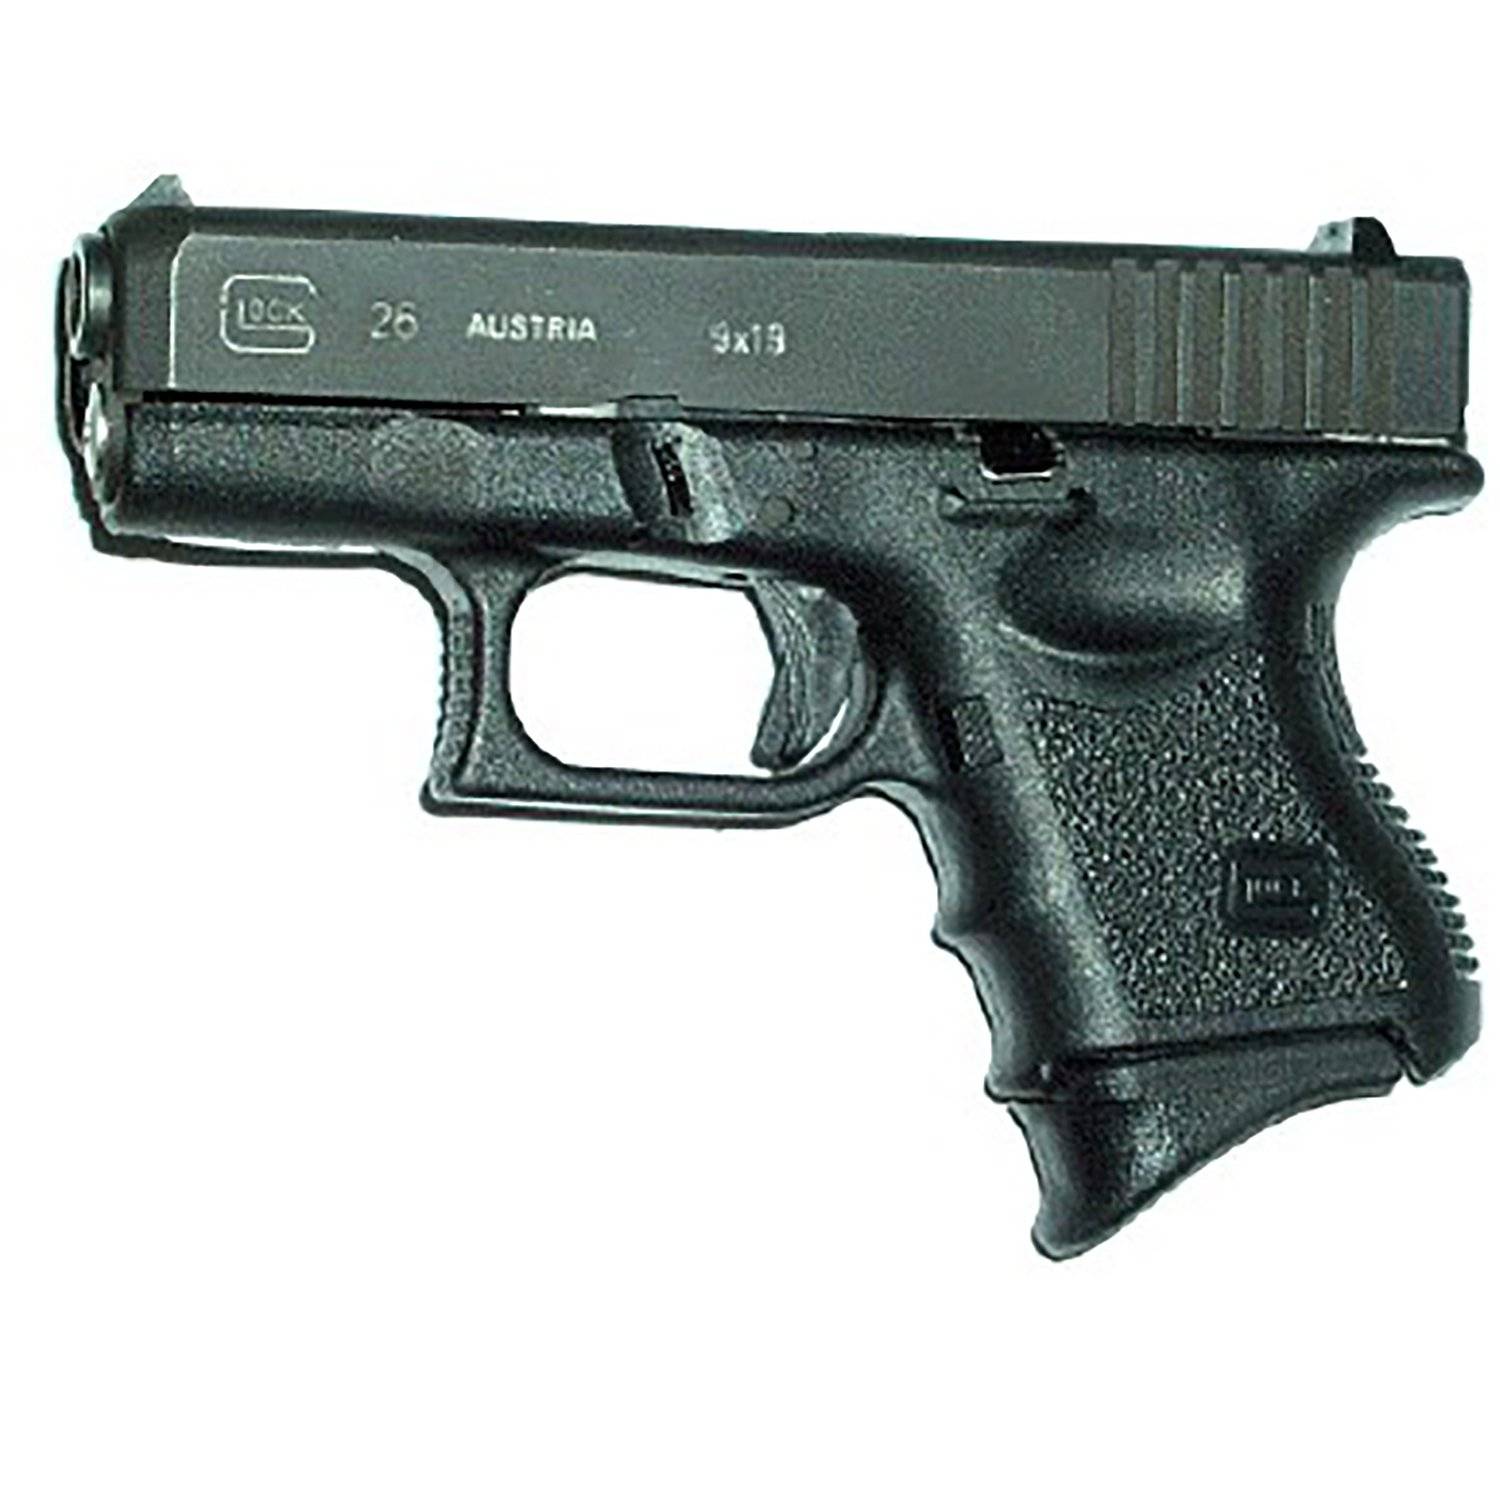 Pearce Grip Glock Model 26 27 33 39 Grip Extension